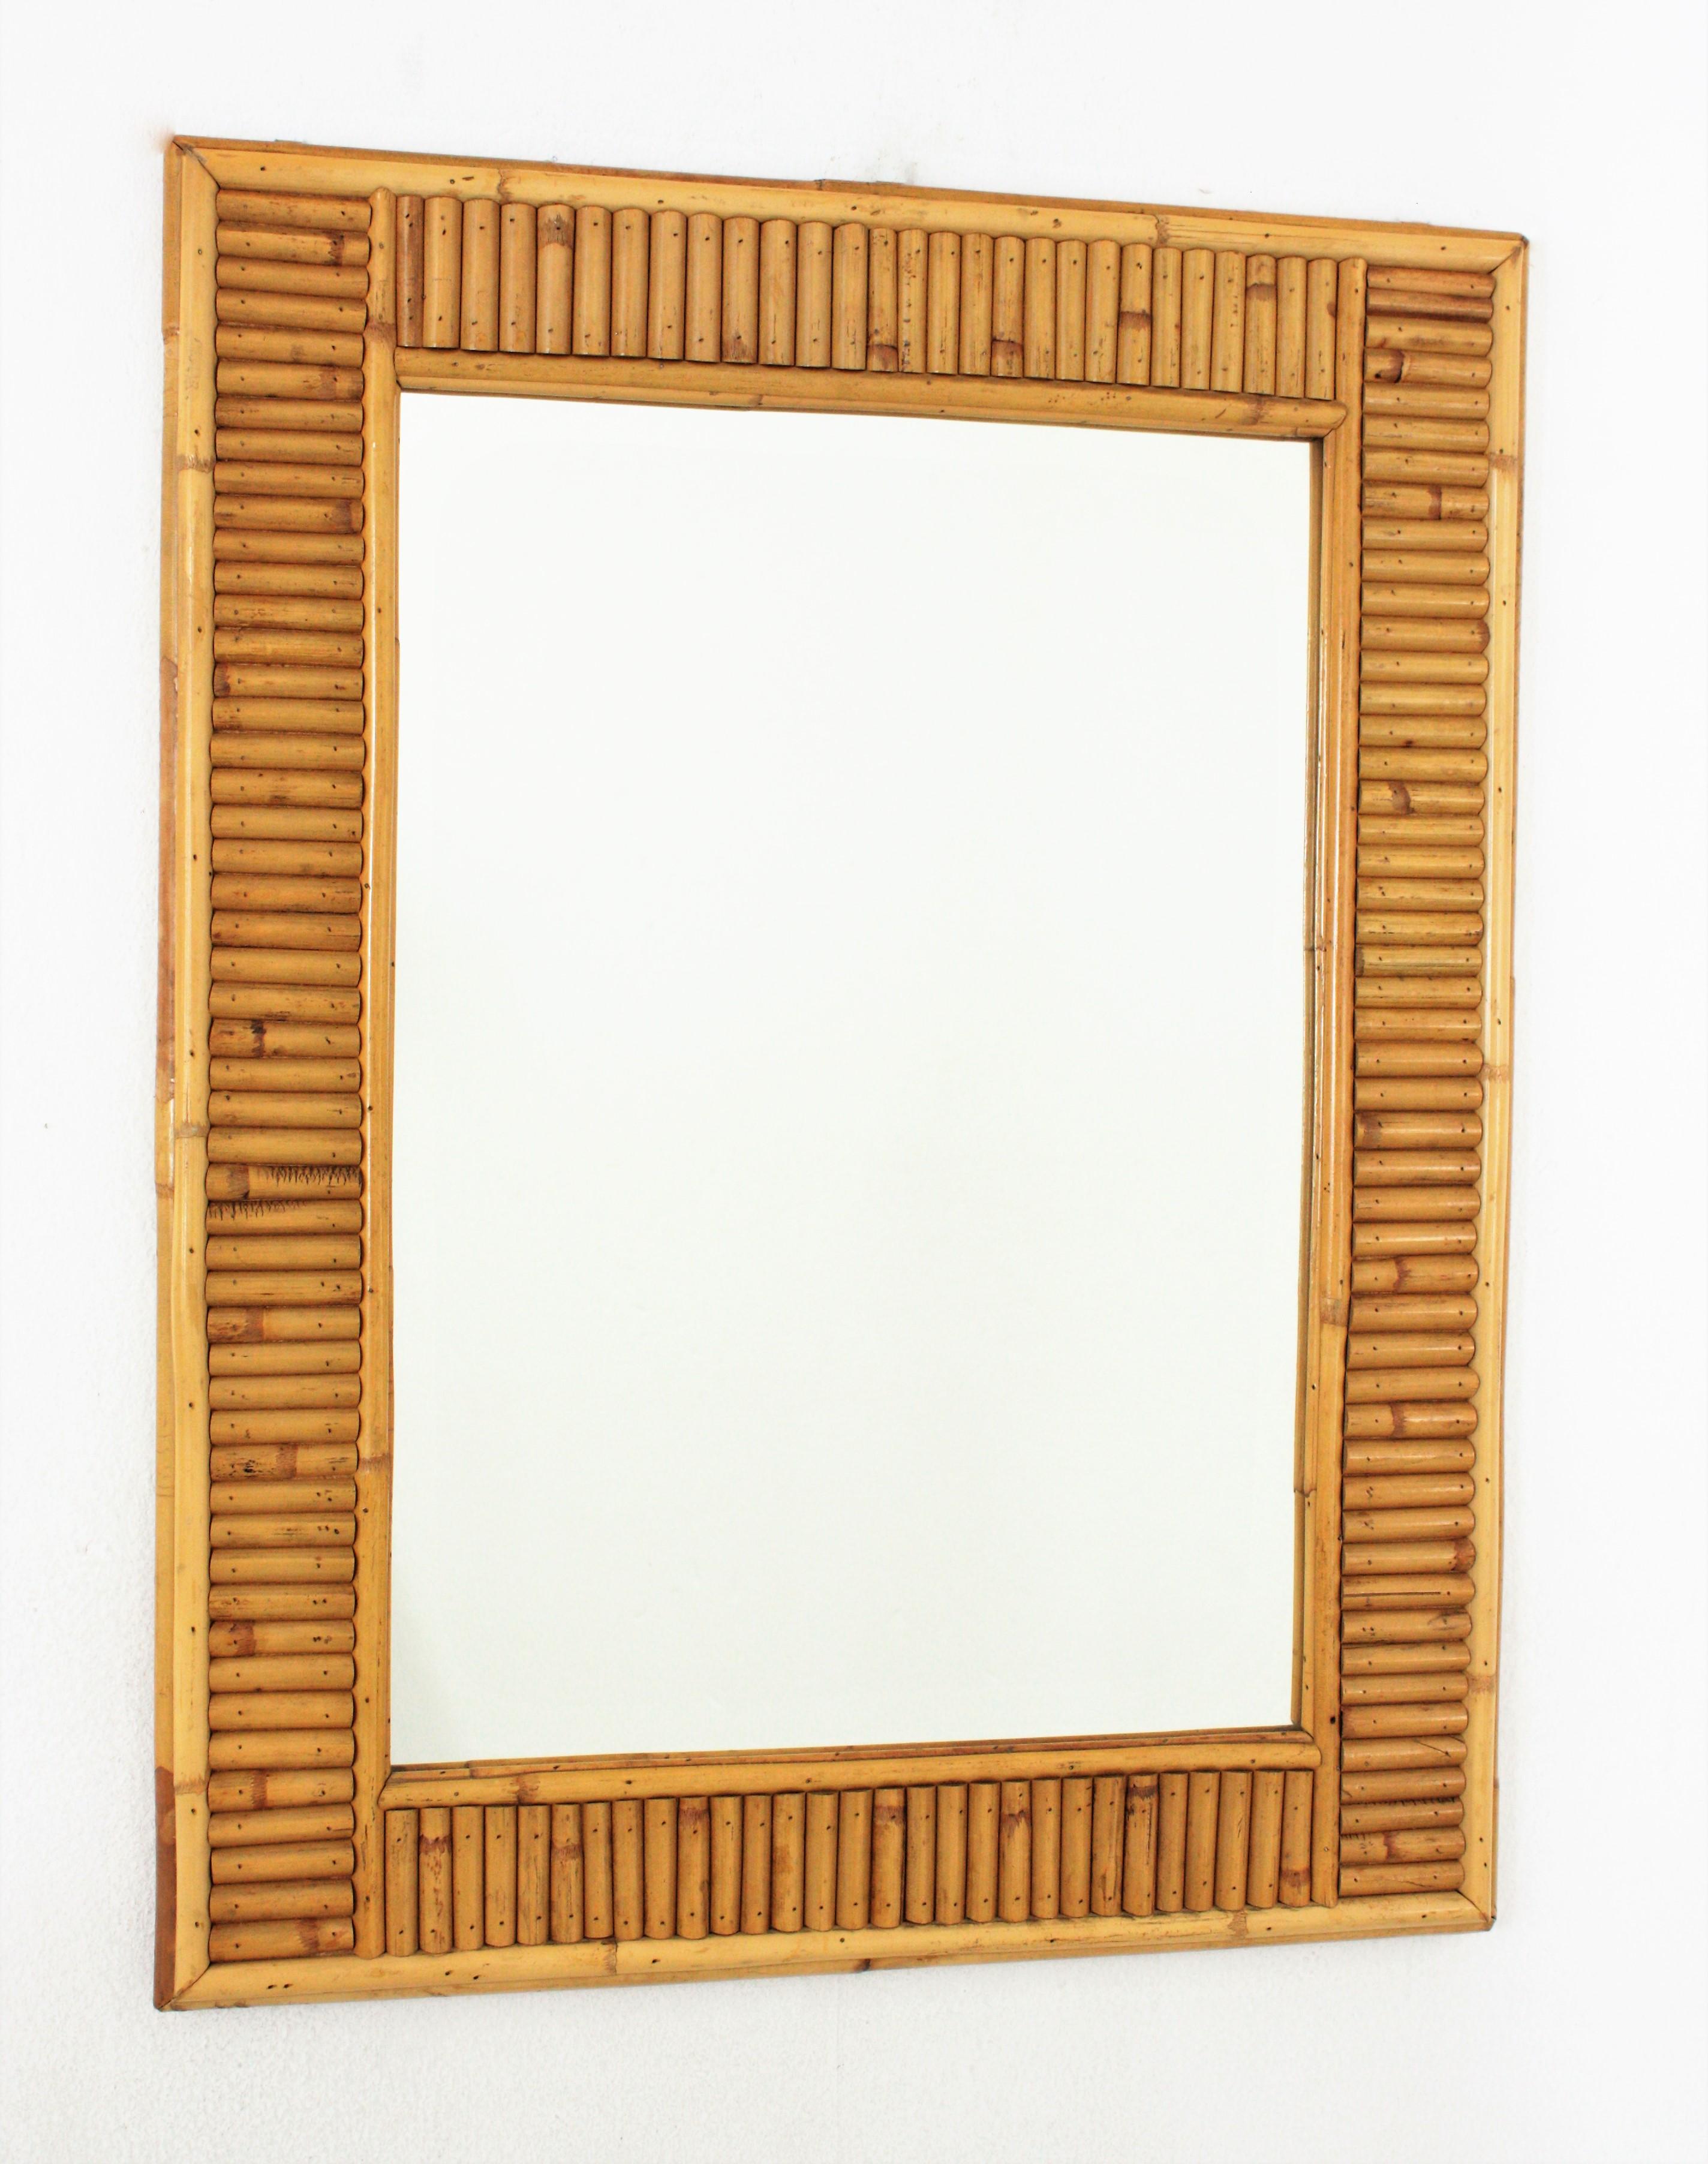 Italienischer Designer Midentury Wandspiegel, gespaltenes Schilf, Bambus, Rattan, Italien, 1960er Jahre.
Dieser coole rechteckige Spiegel wurde in Handarbeit aus Bambusrohr und Rattan hergestellt. Sein Design kombiniert Midcentury- und orientalische